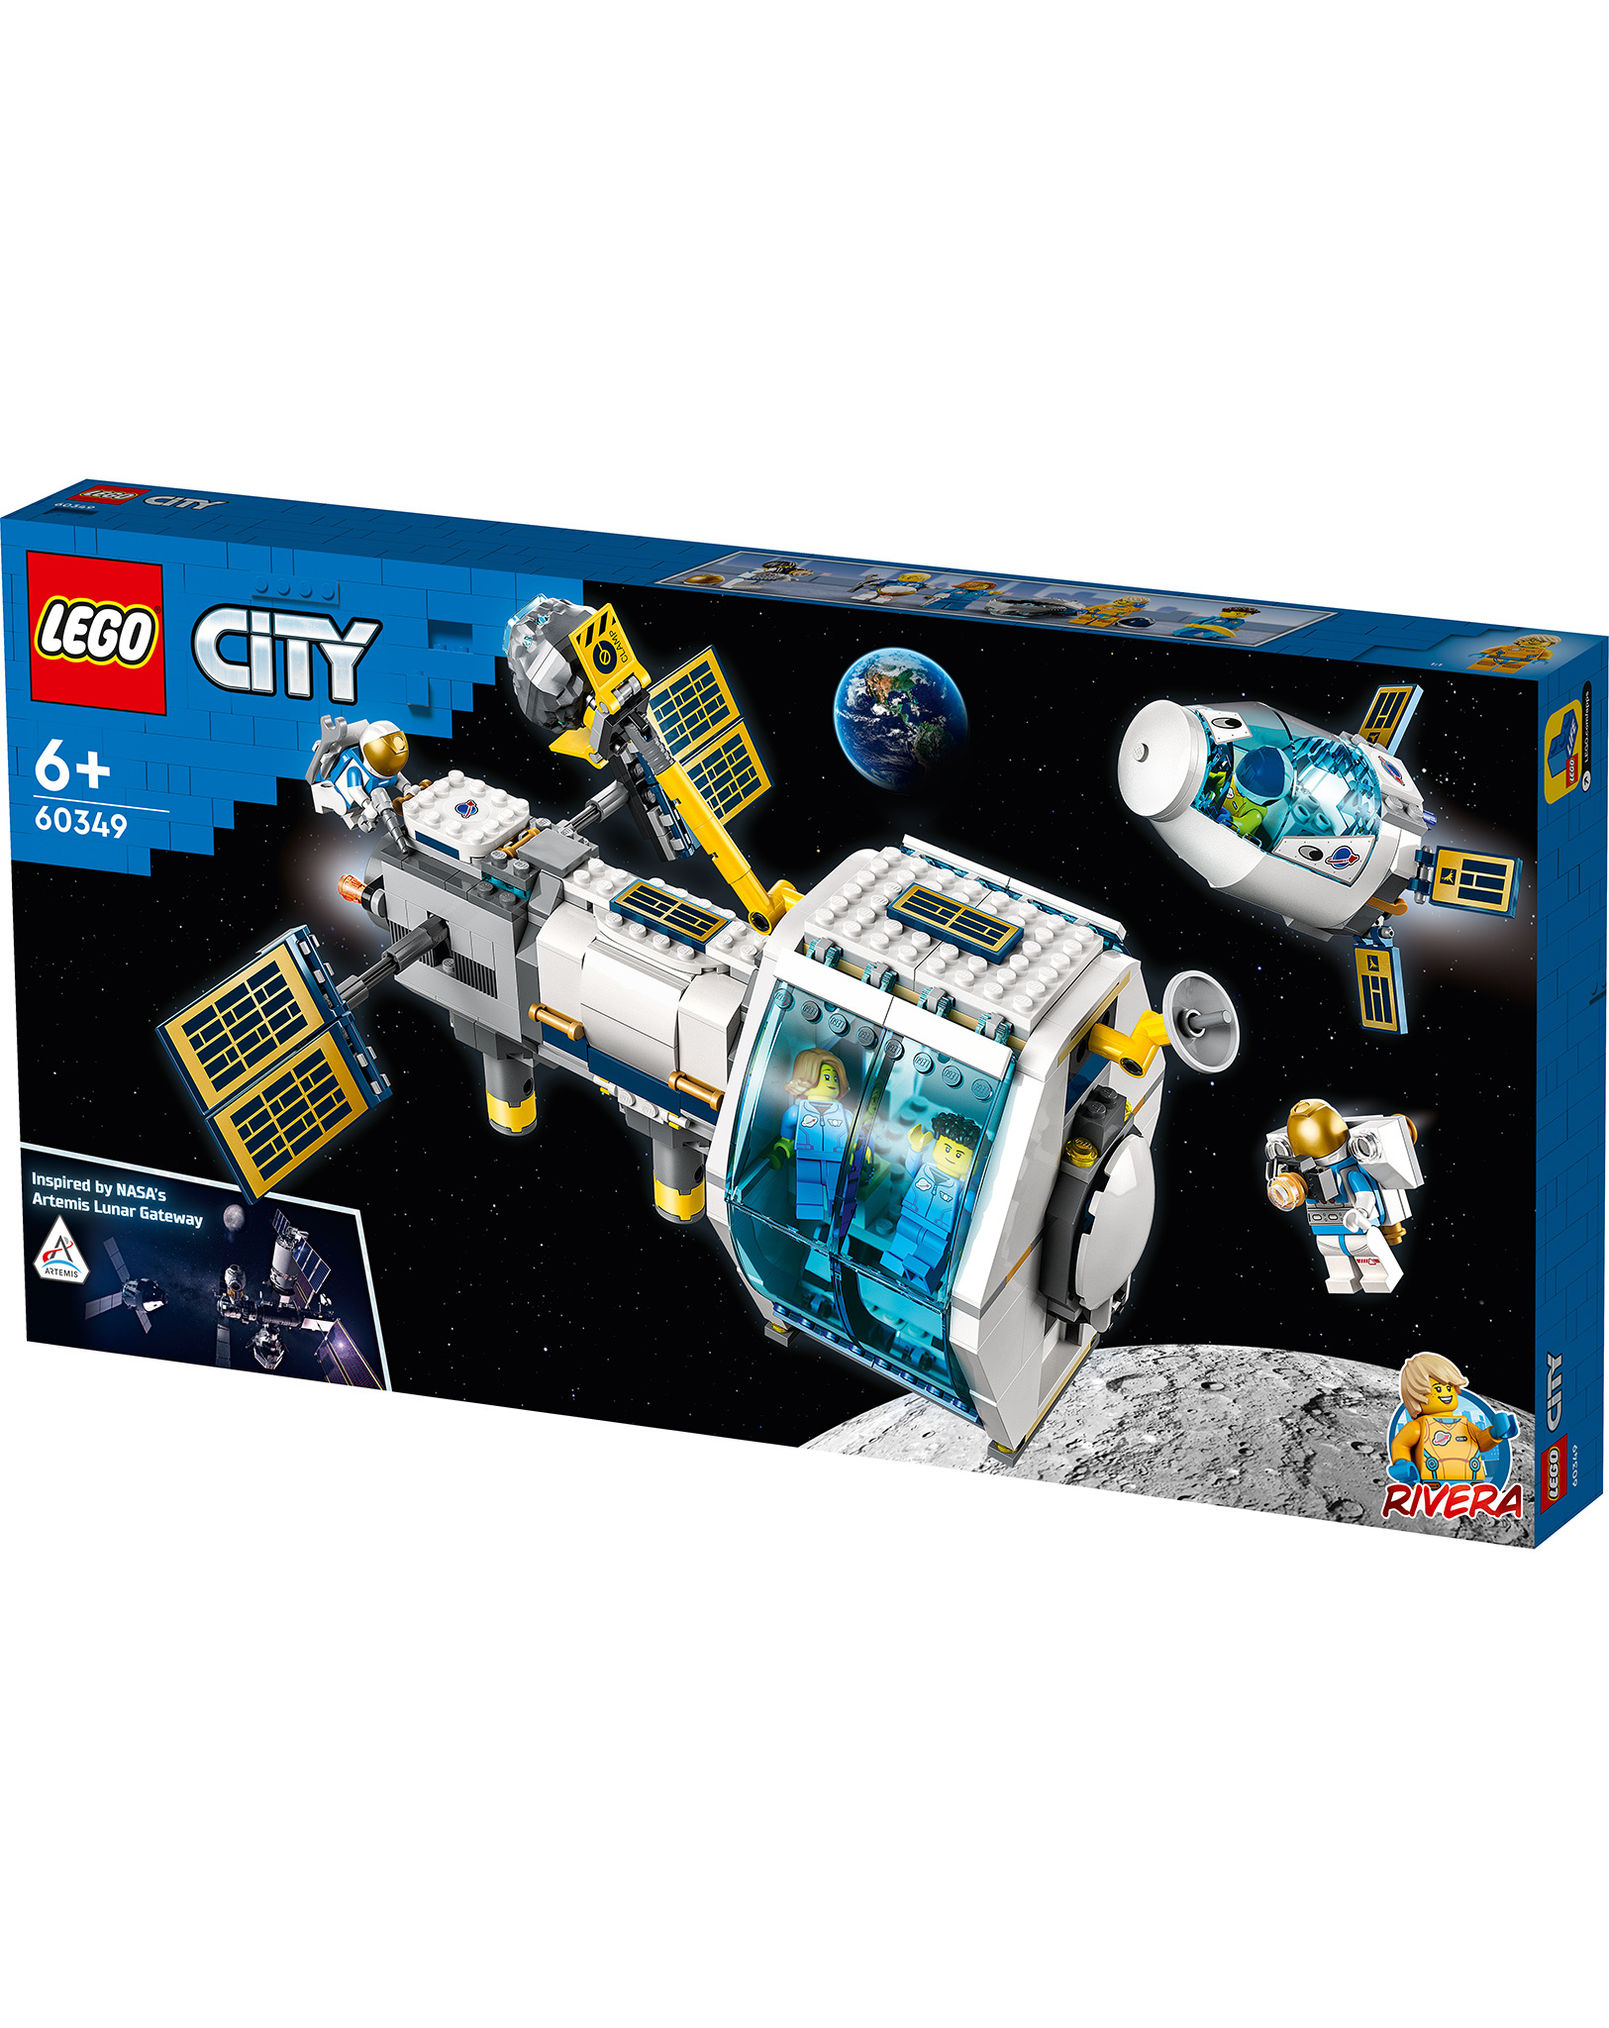 LEGO® City 60349 Mond-Raumstation kaufen | tausendkind.de